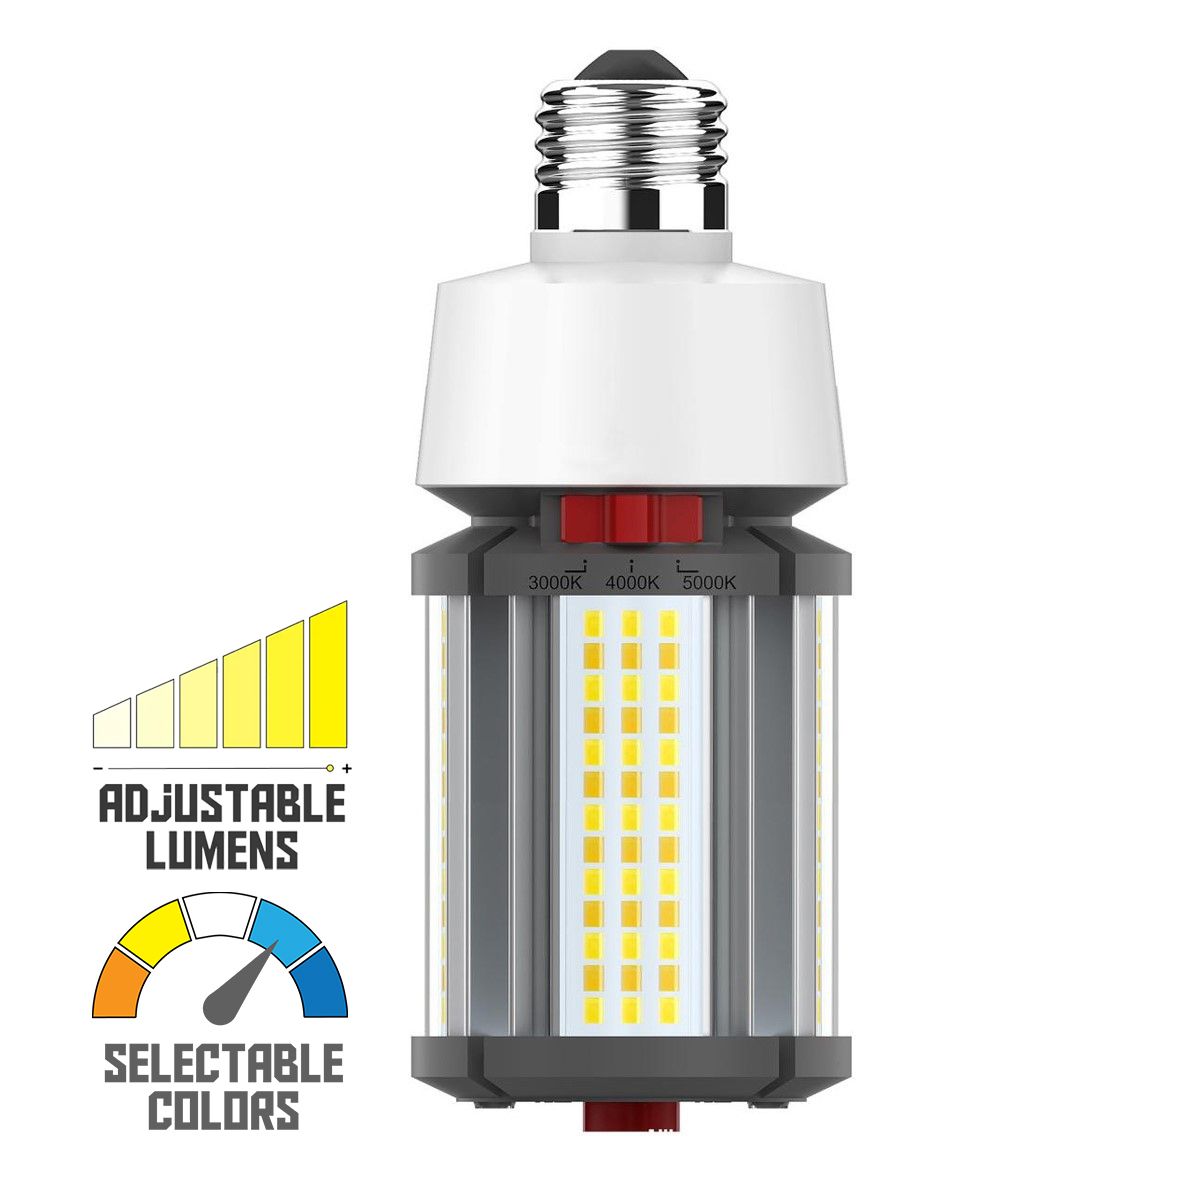 Hi-Pro Retrofit LED Corn Bulb, 18W, 2520 Lumens, Selectable CCT, 30K/40K/50K, E26 Base, 120-277V